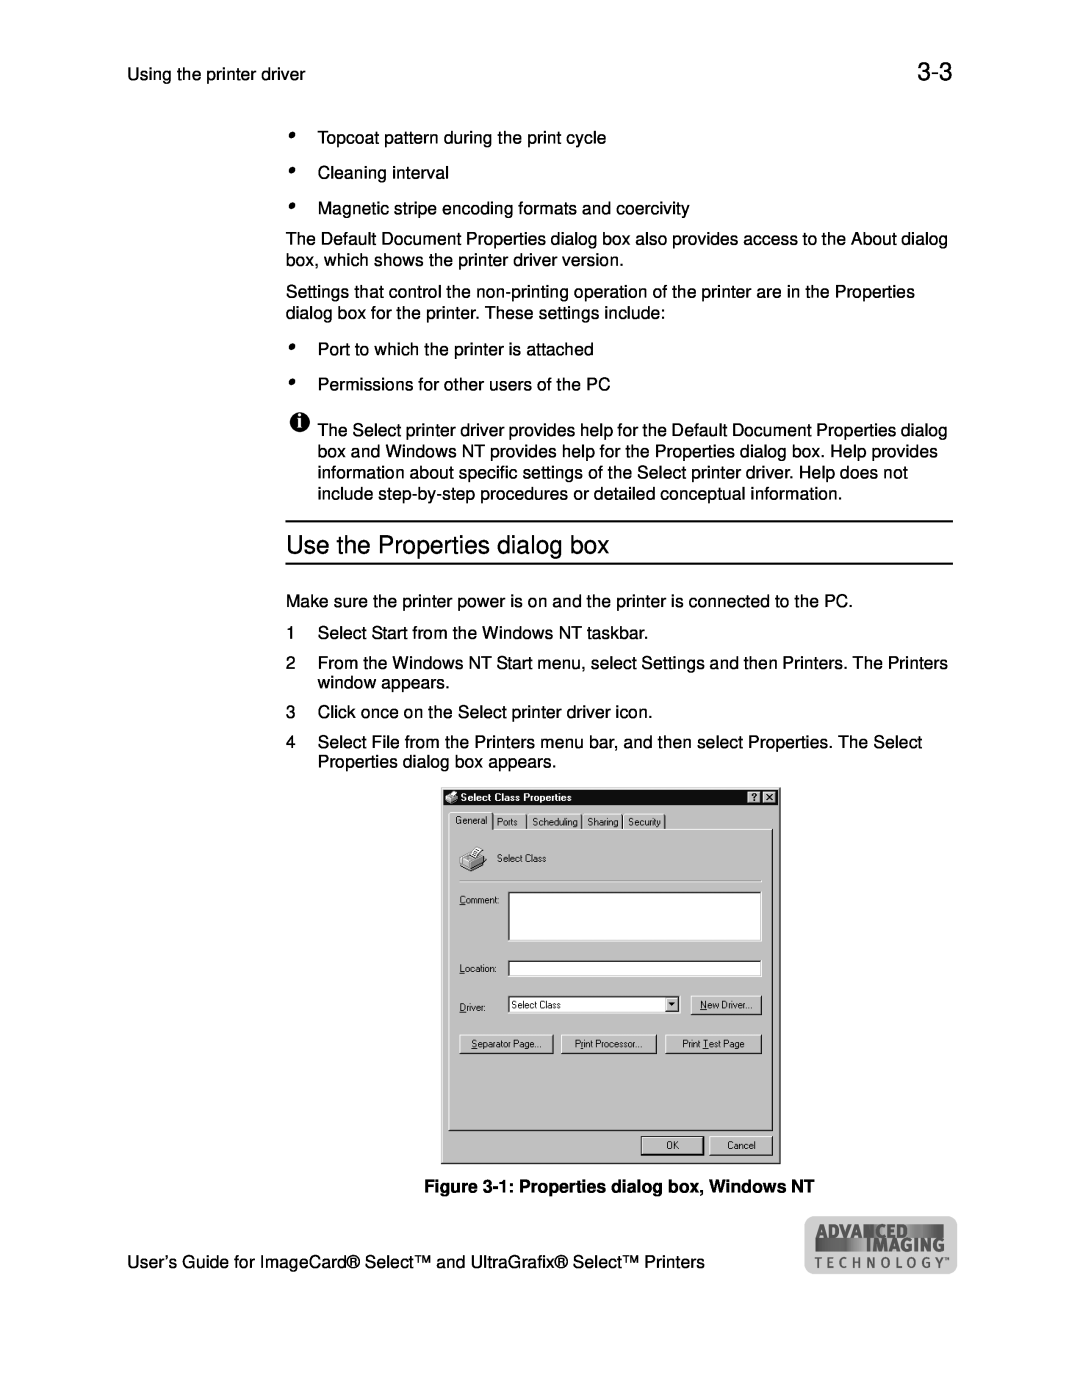 Datacard Group ImageCard SelectTM and UltraGrafix SelectTM Printers manual Use the Properties dialog box 